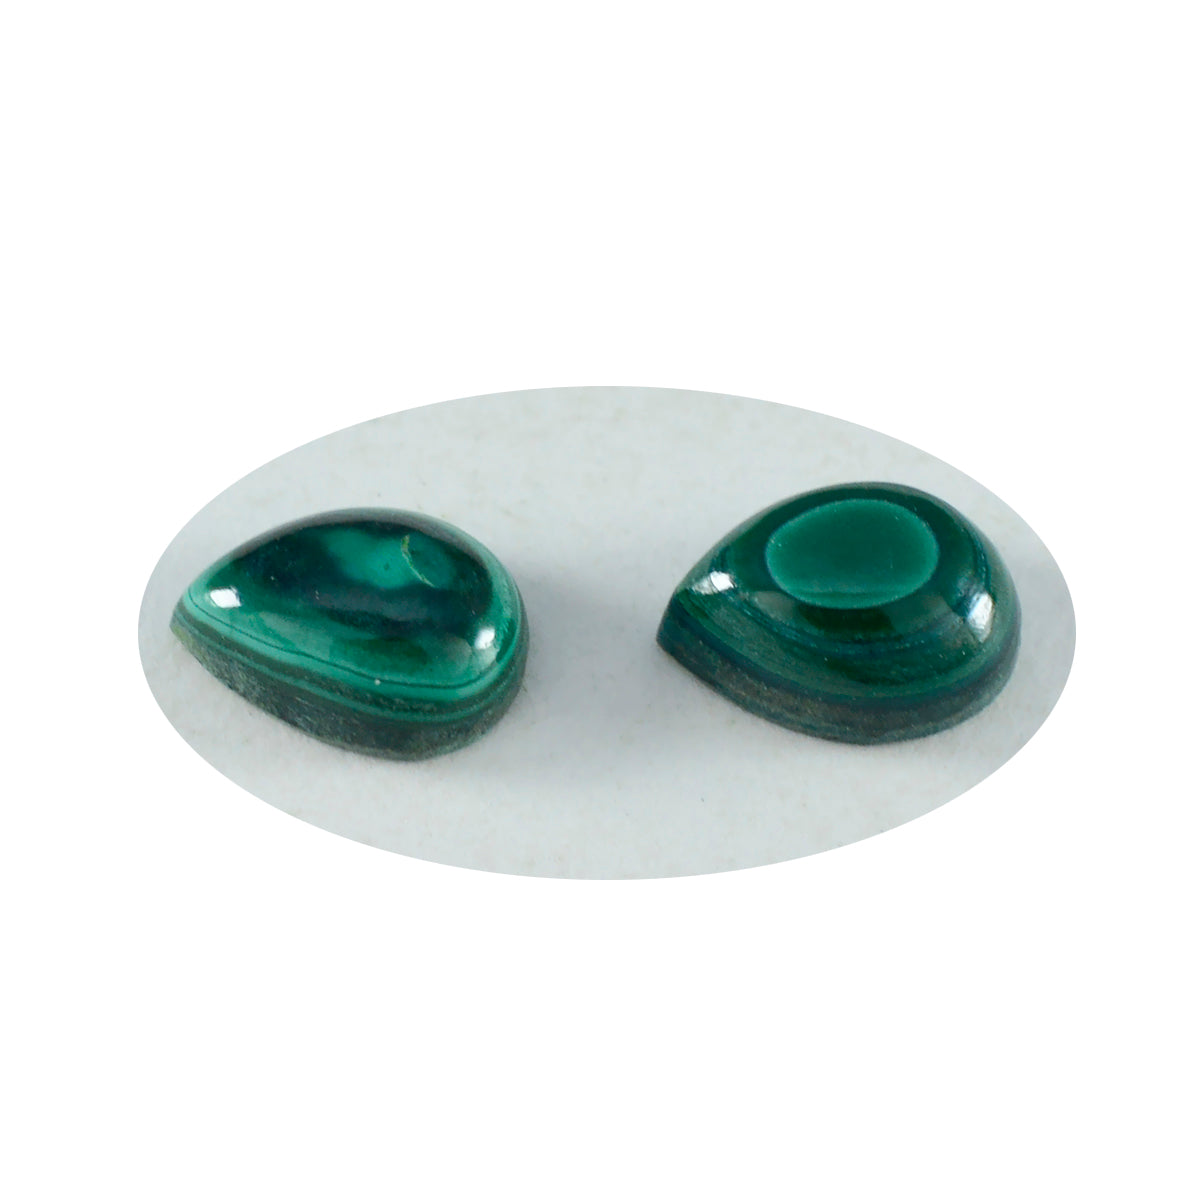 riyogems 1 pieza cabujón de malaquita verde 5x7 mm forma de pera piedra preciosa de calidad A1